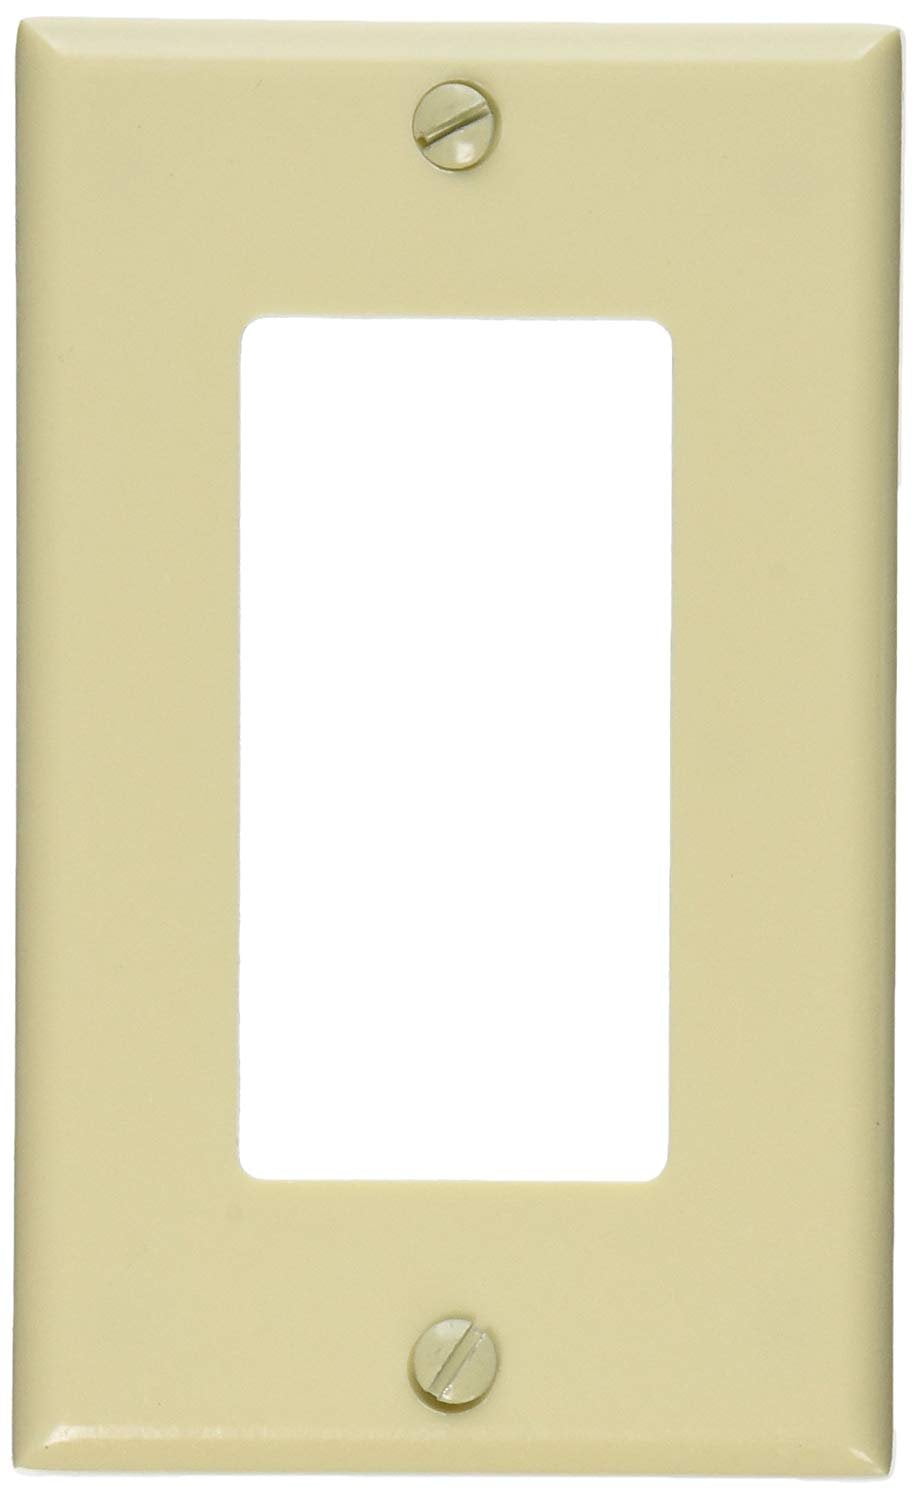 5 Leviton 1-Gang Black Decora GFI GFCI Plastic Thermoset Cover Wallplate 80401-E